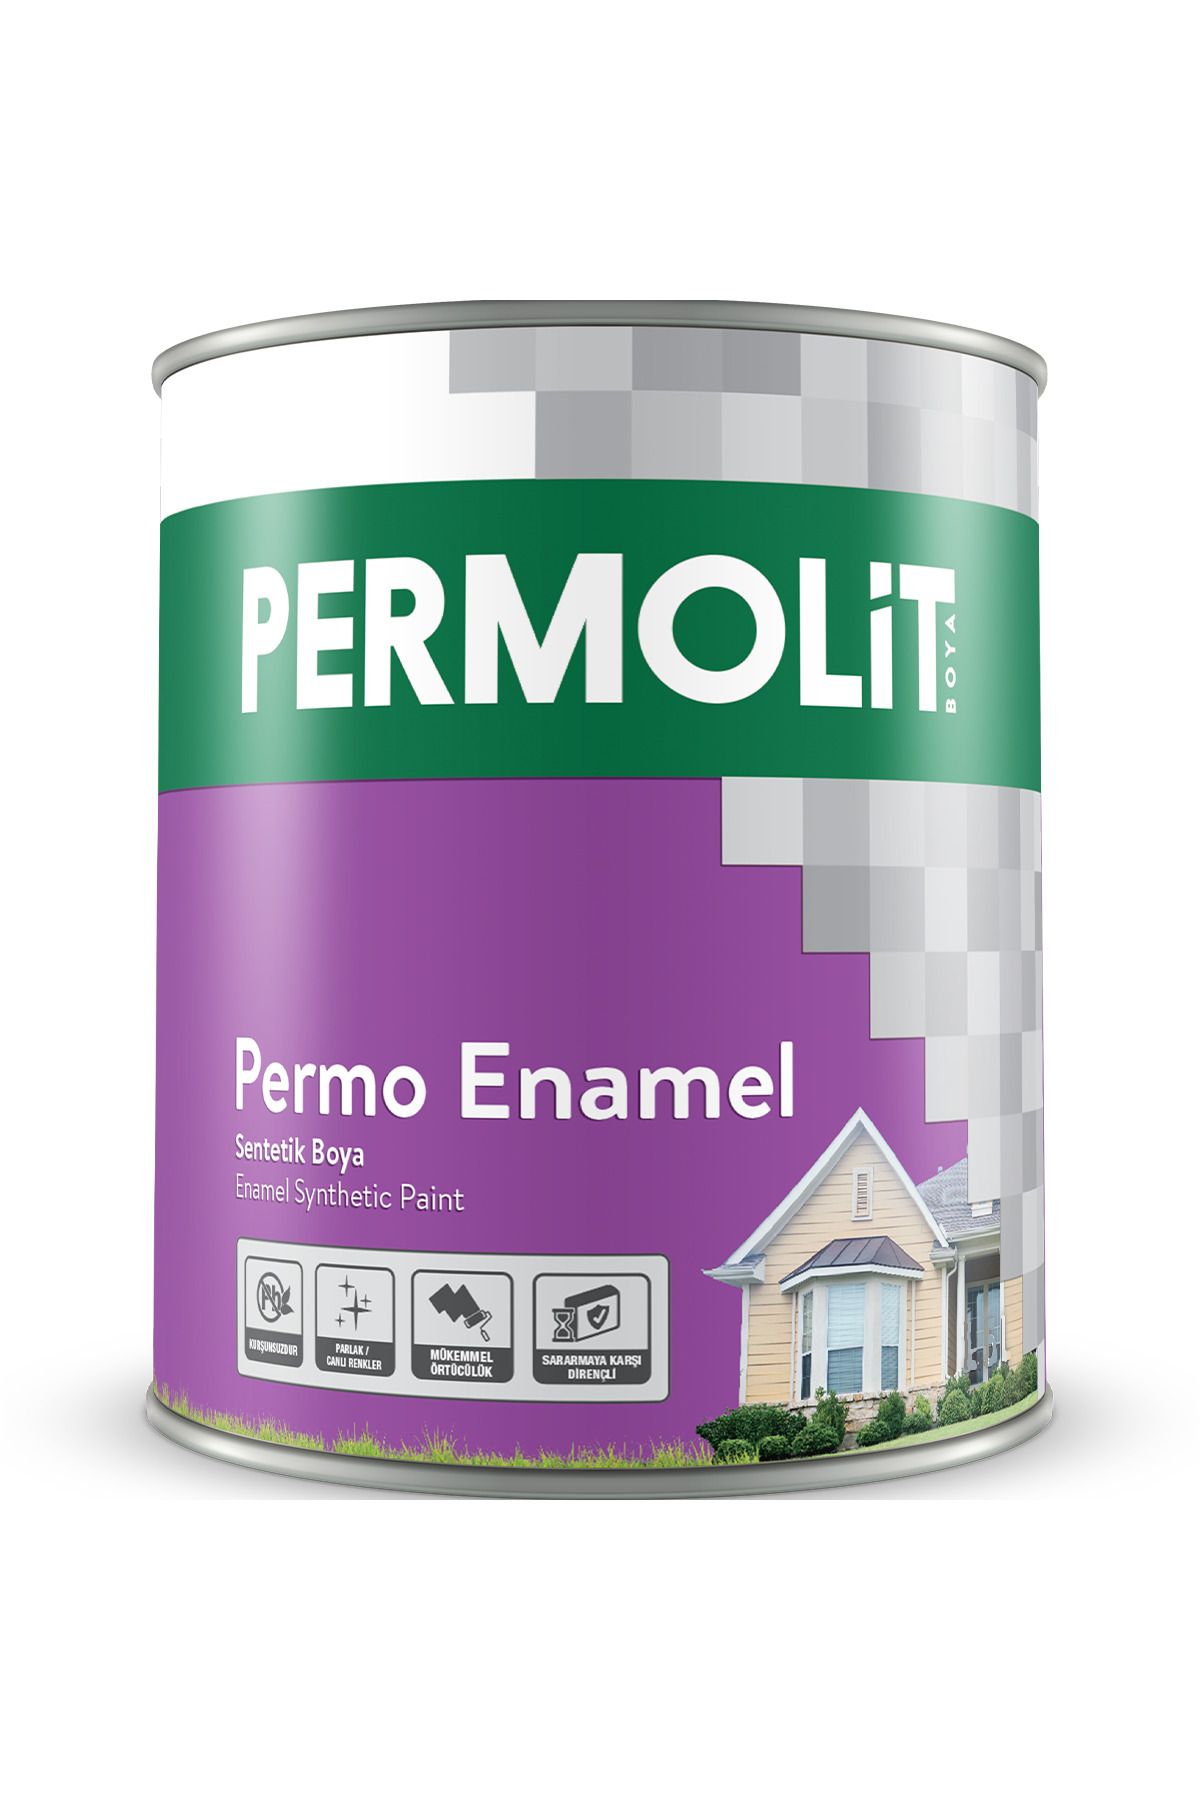 Permolit Permo Enamel Pastel Mavi Sentetik Boya 0,25 Lt. 34 Farklı Renk